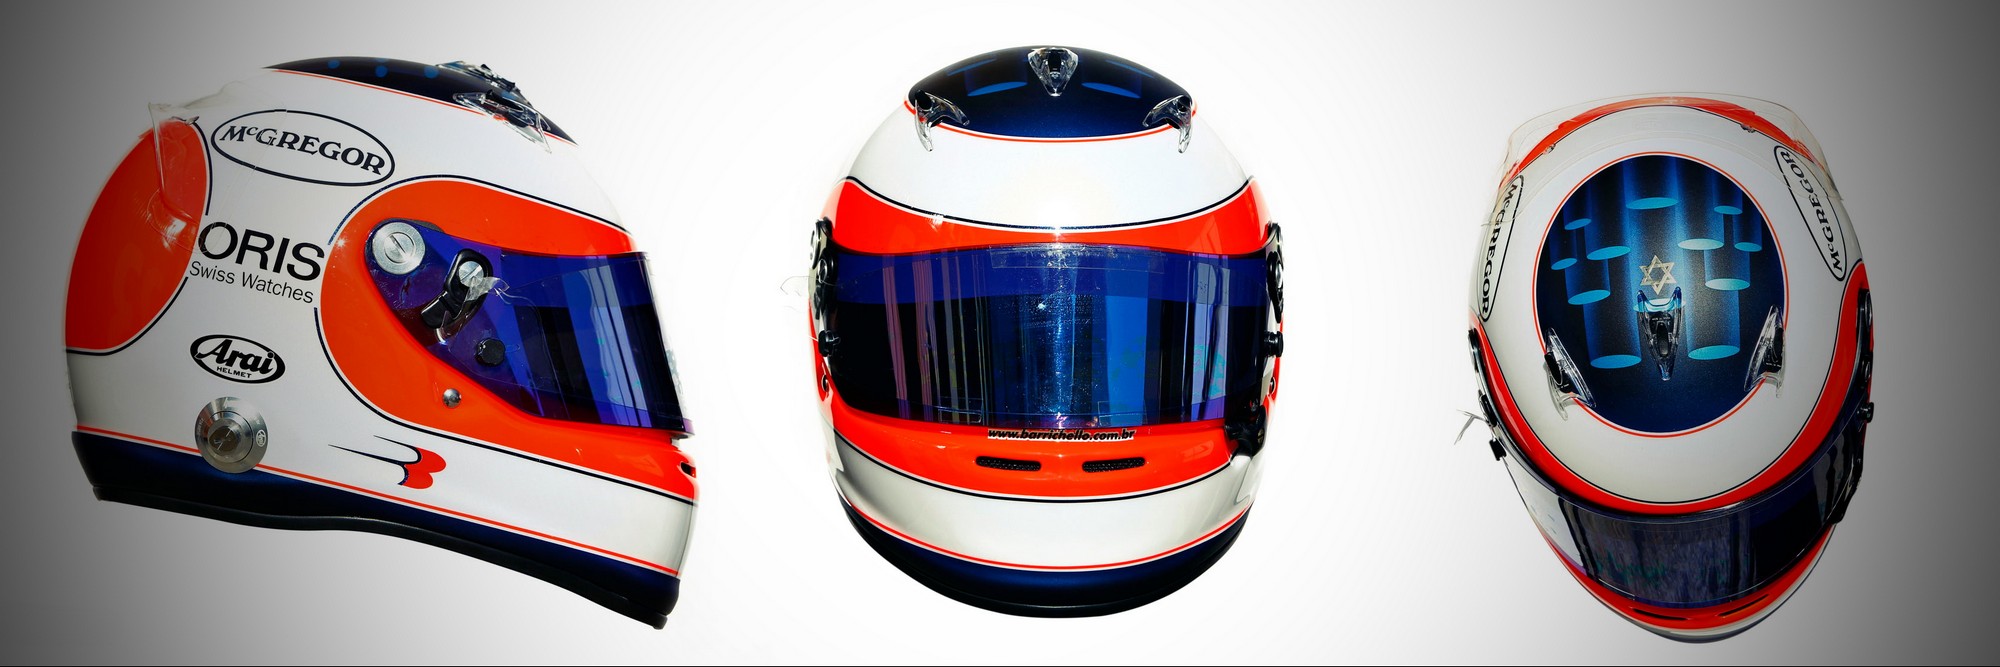 Шлем Рубенса Баррикелло на сезон 2011 года | 2011 helmet of Rubens Barrichello